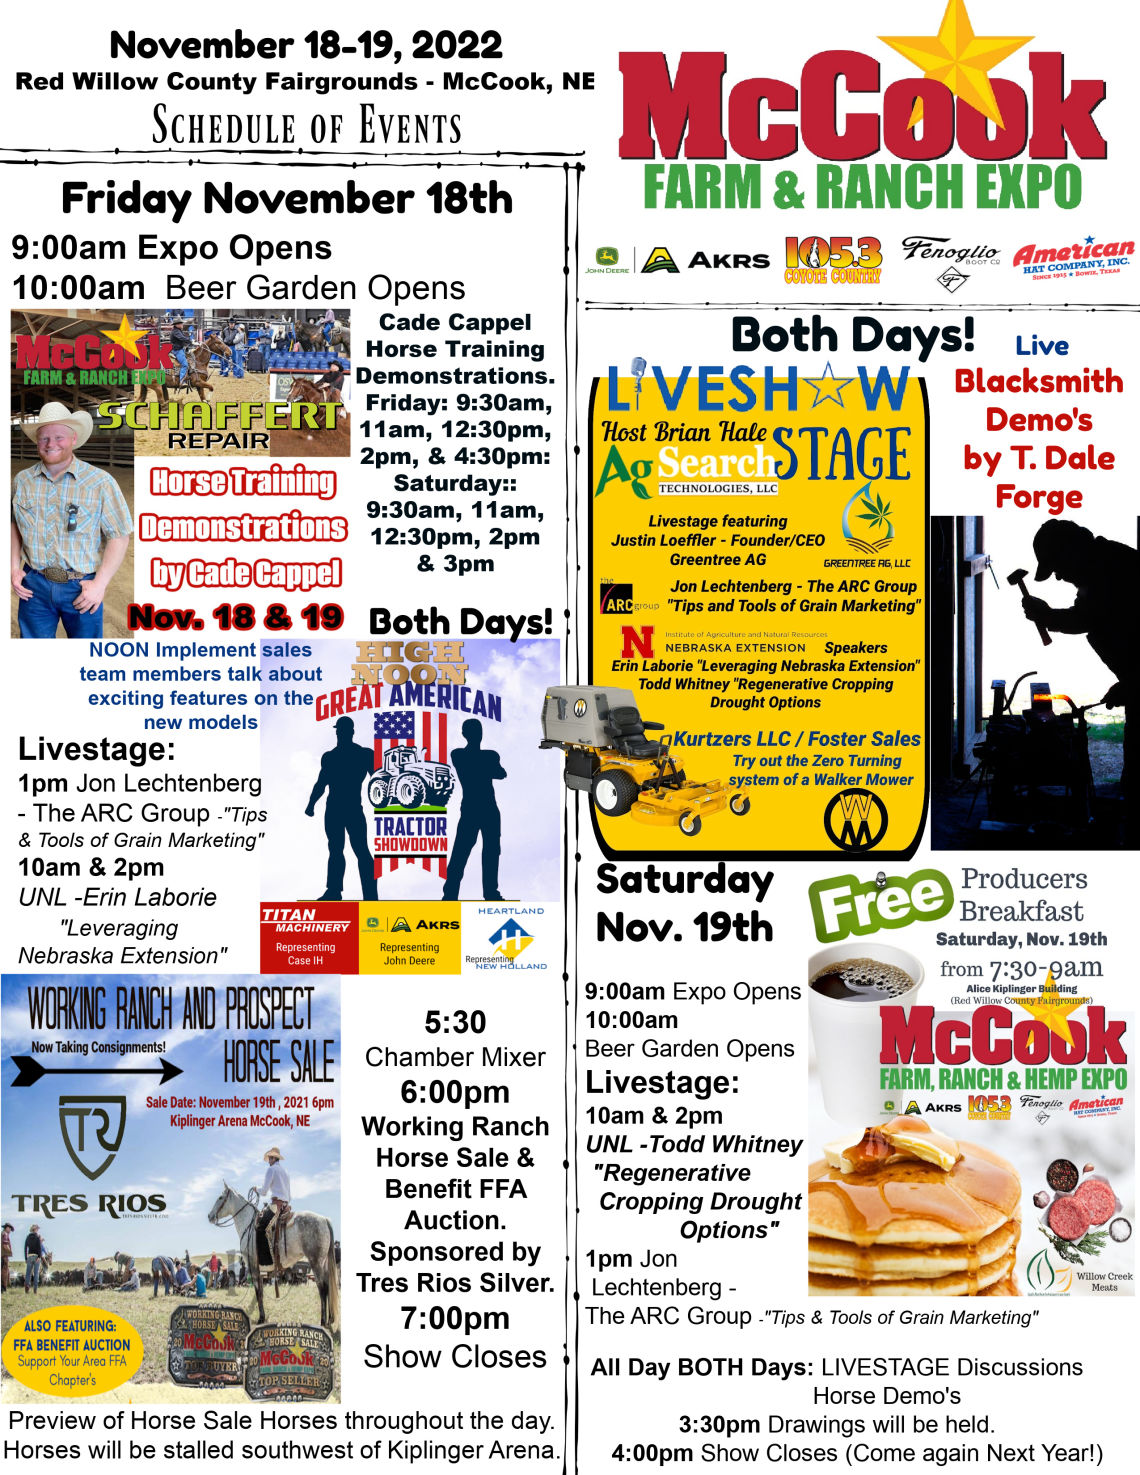 LIVESHOW at the McCook Farm, Ranch & Hemp Expo